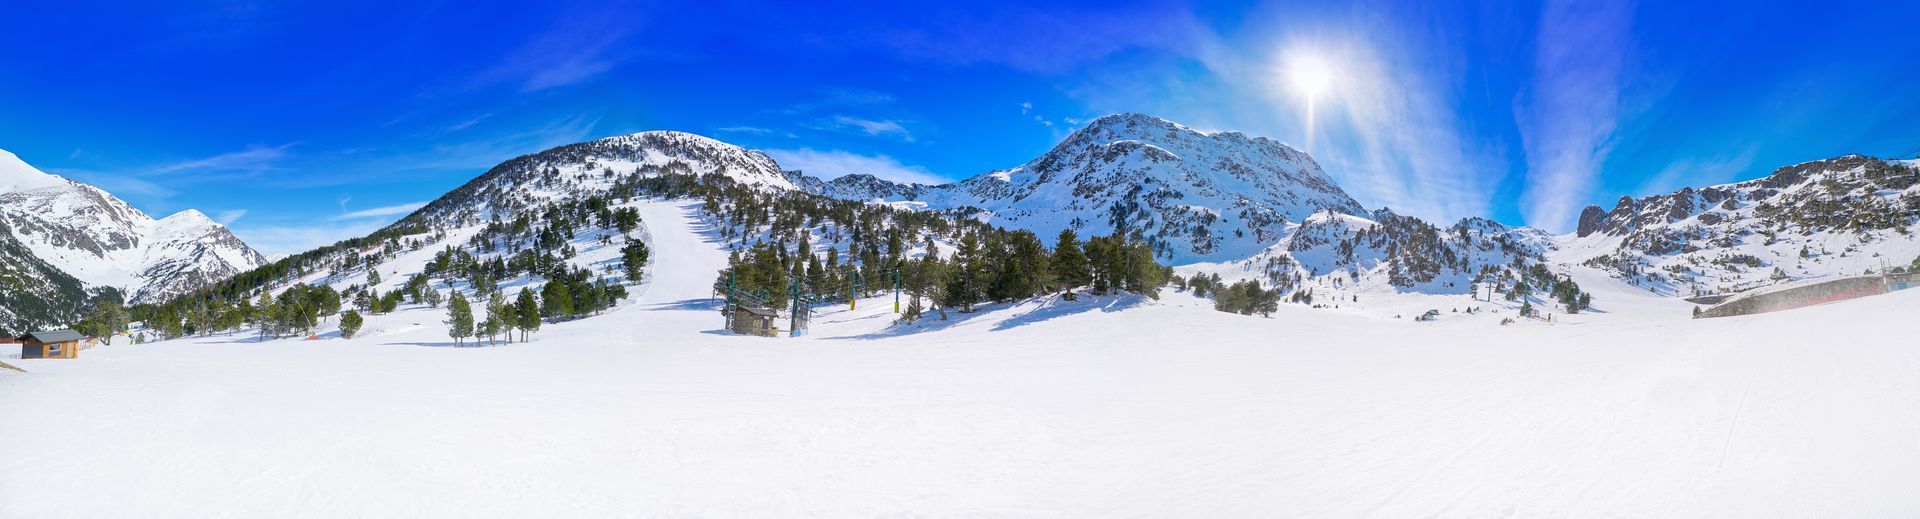 Las mejores pistas de esquí del sur de Europa